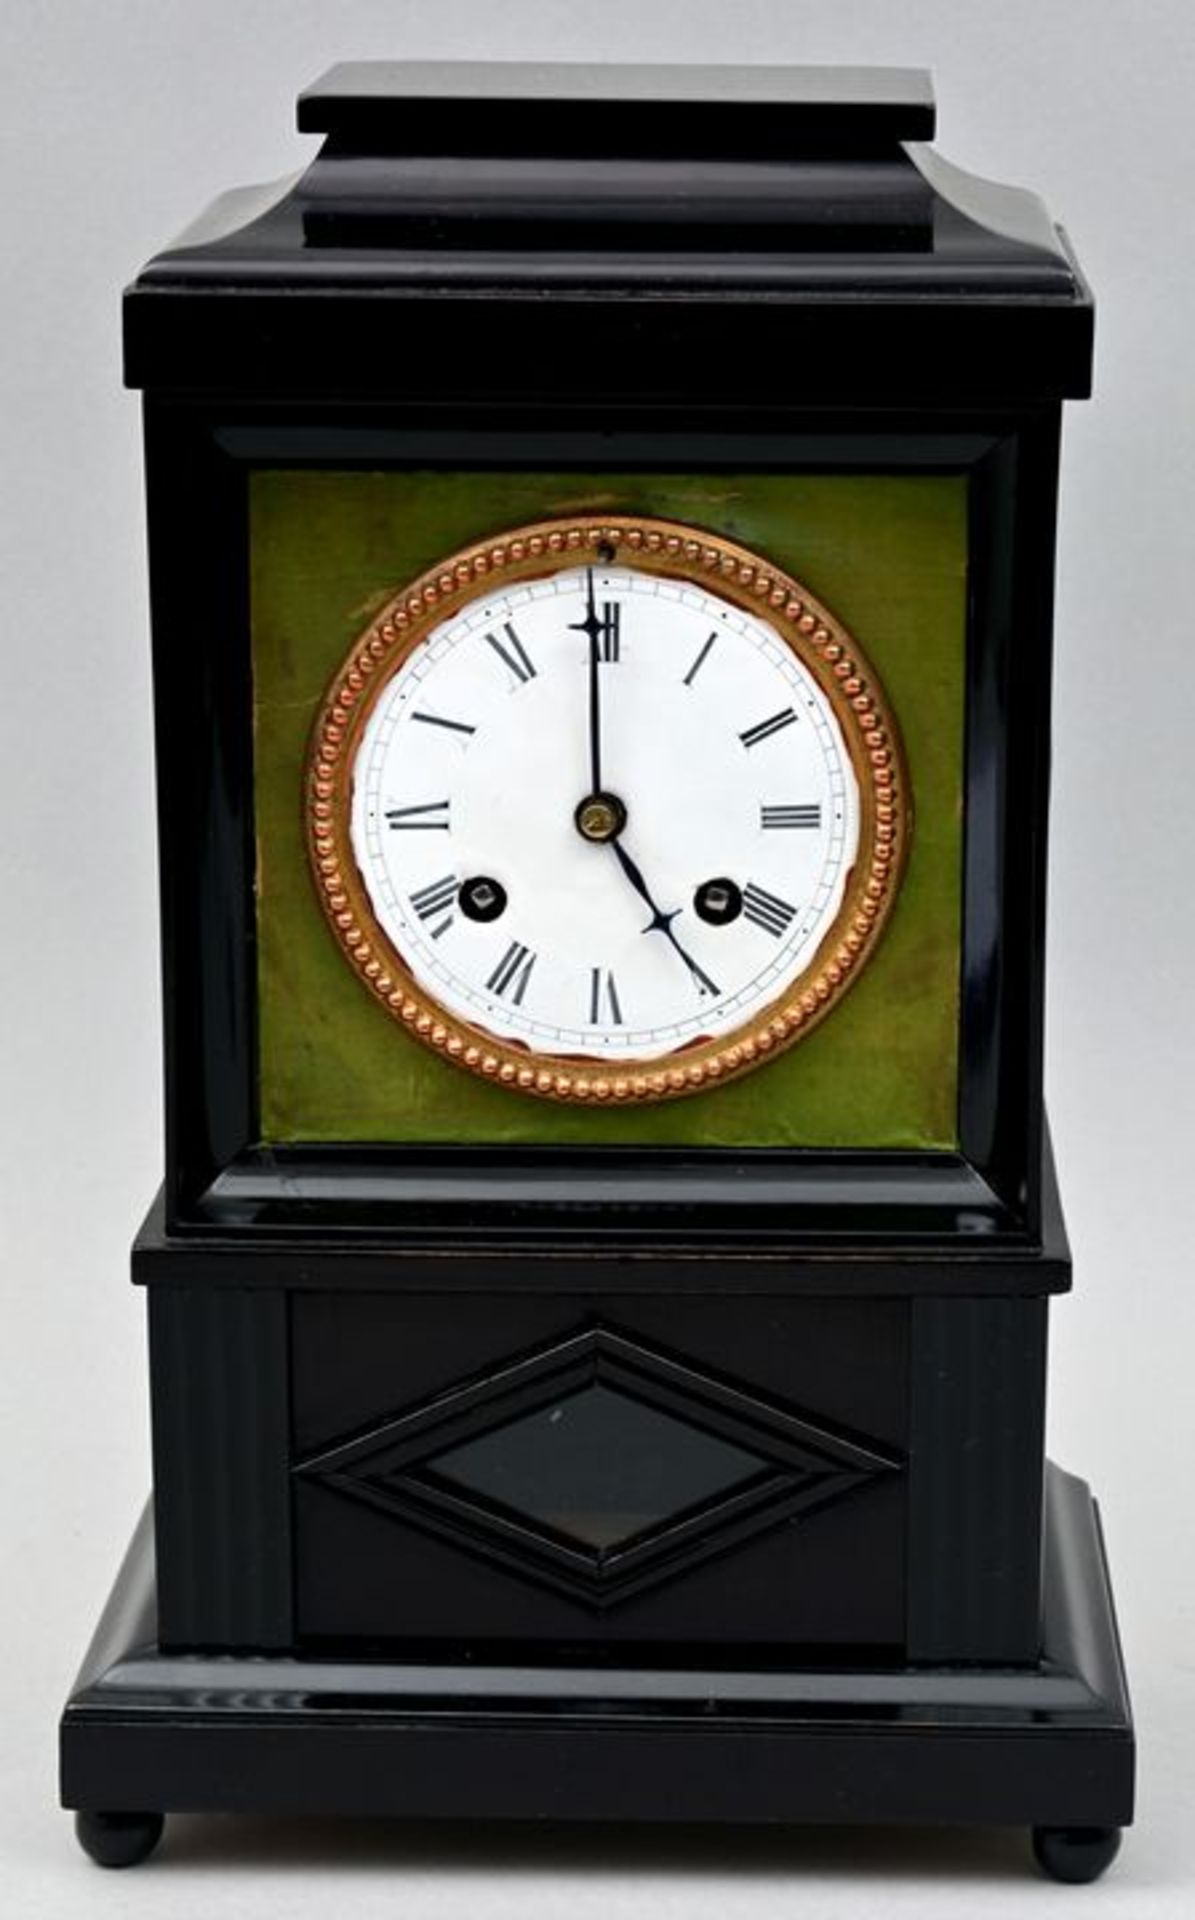 Tischuhr / table clock